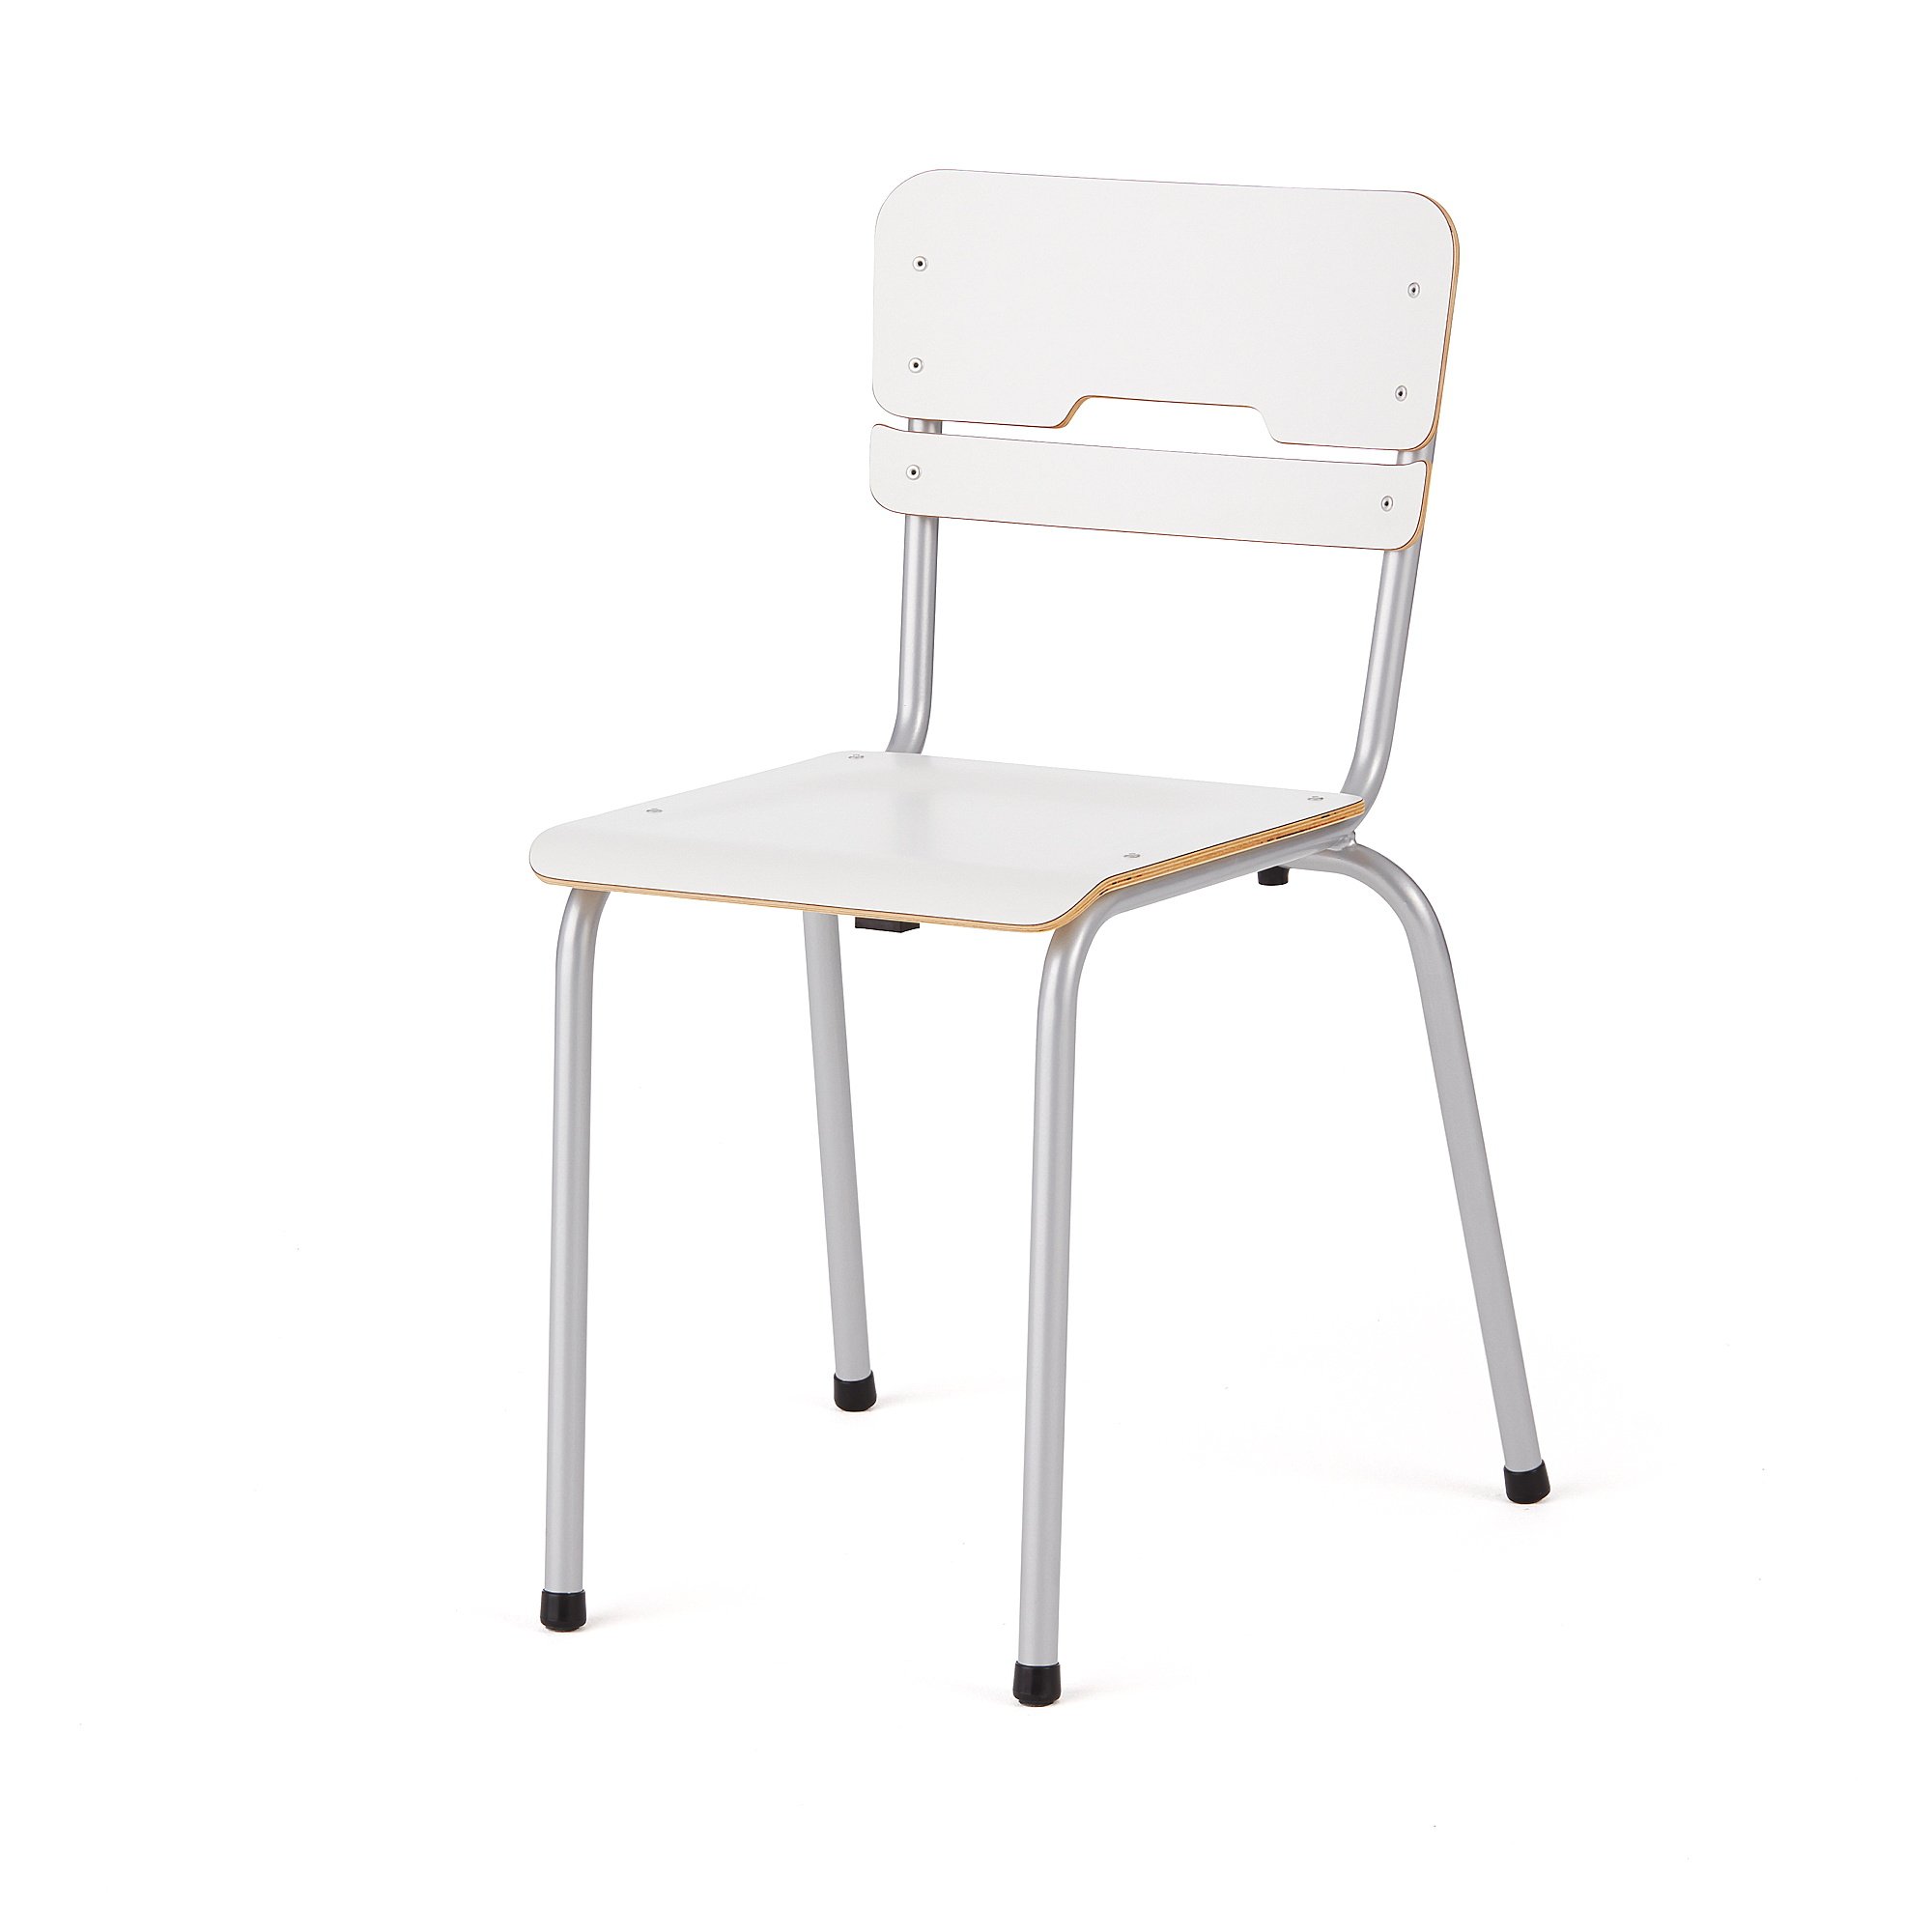 E-shop Školská stolička SCIENTIA, nízke sedadlo, V 460 mm, strieborná/biela